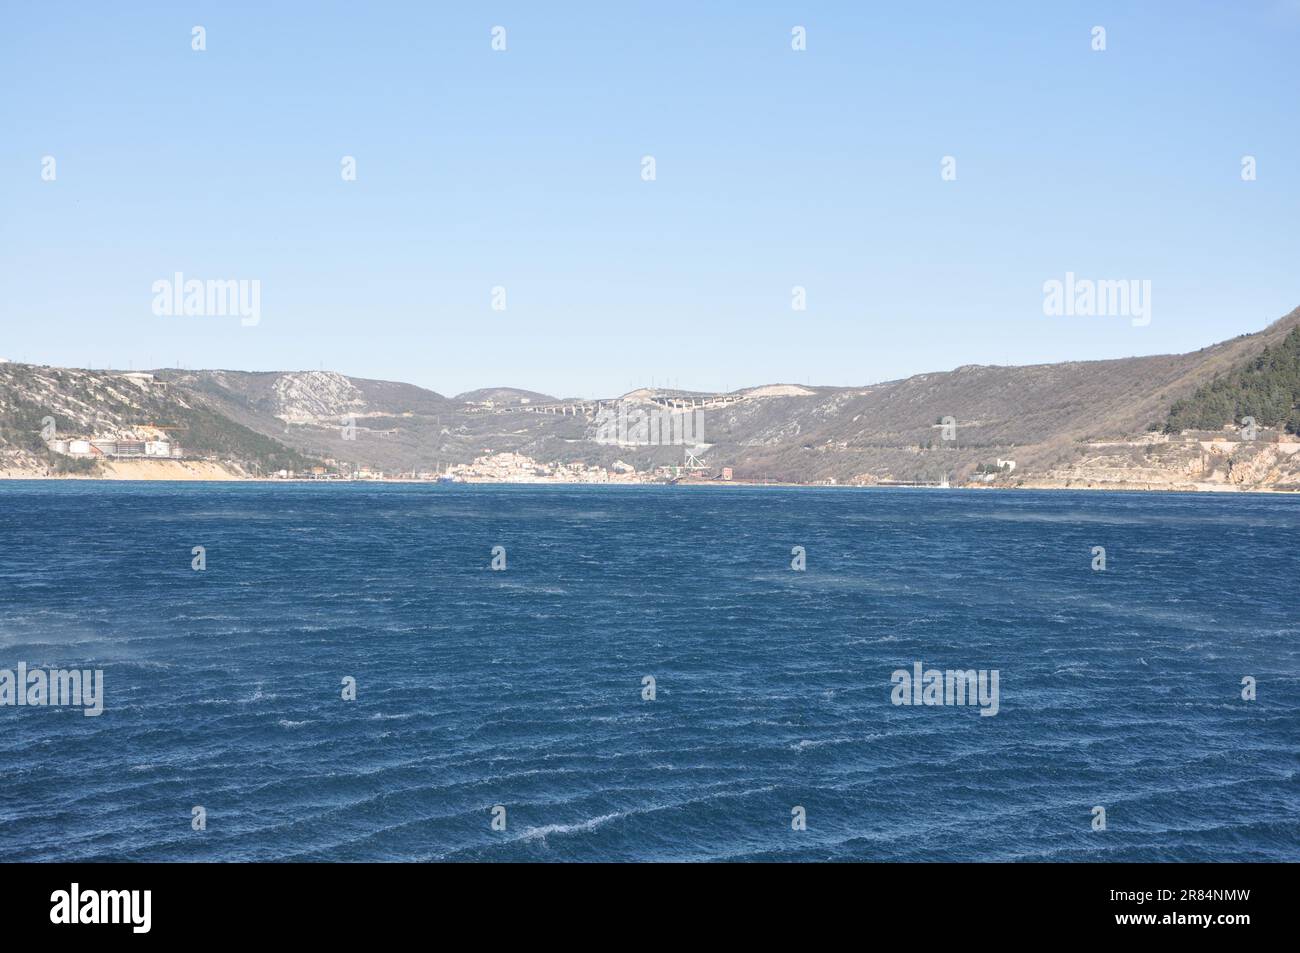 Vue panoramique de la ville de Bakar avec mer Adriatique rugueuse en Croatie. Bakar est un port pour le fret en vrac et était connu pour son complexe industriel. Banque D'Images